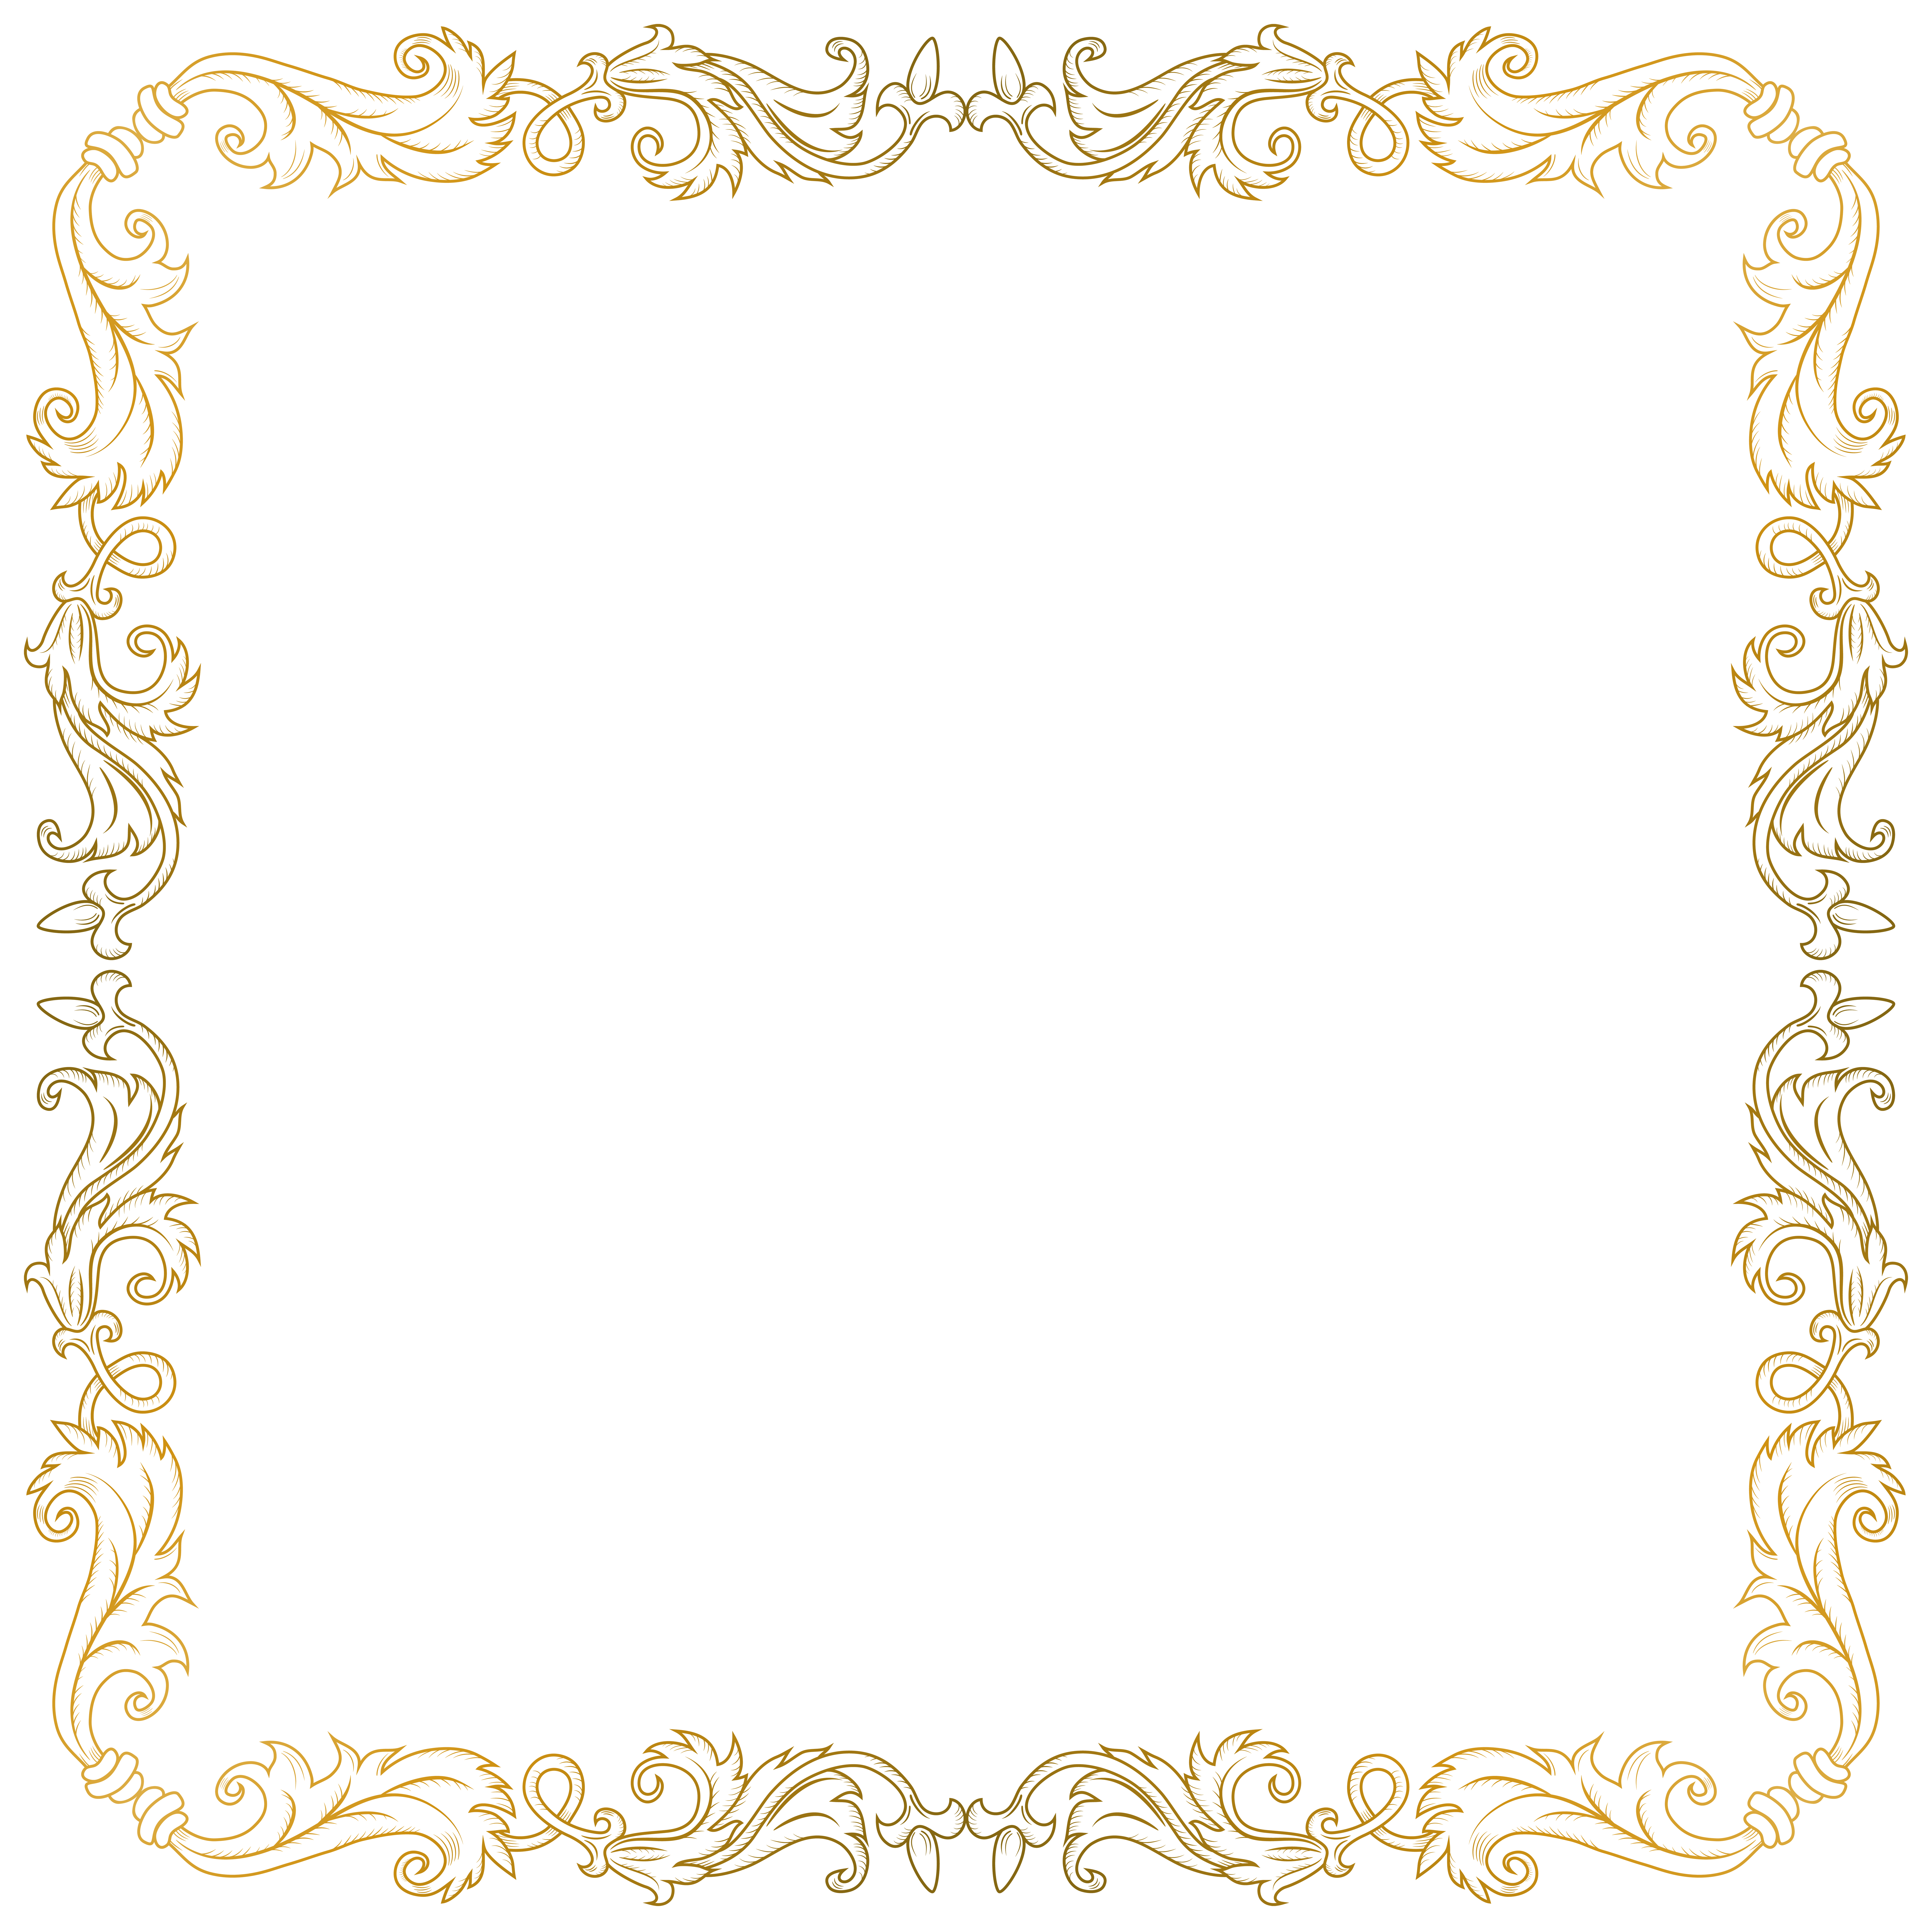 golden frame border png